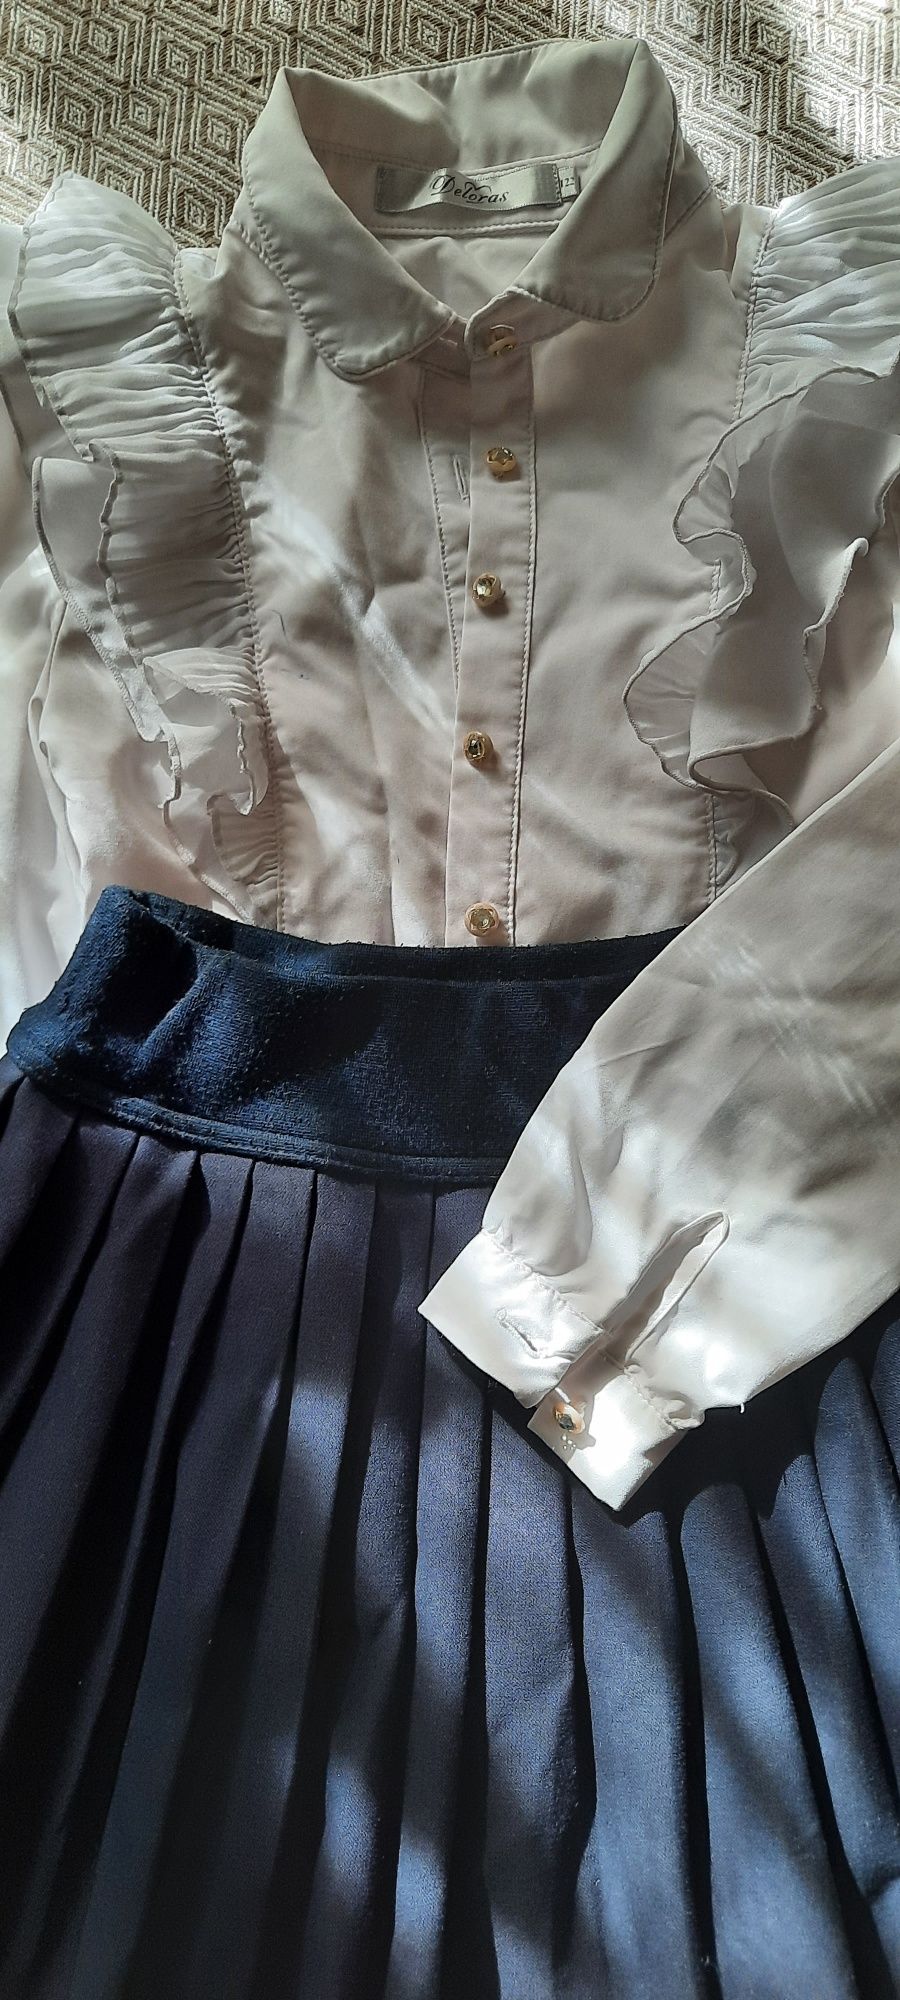 Нарядная блузка и юбка